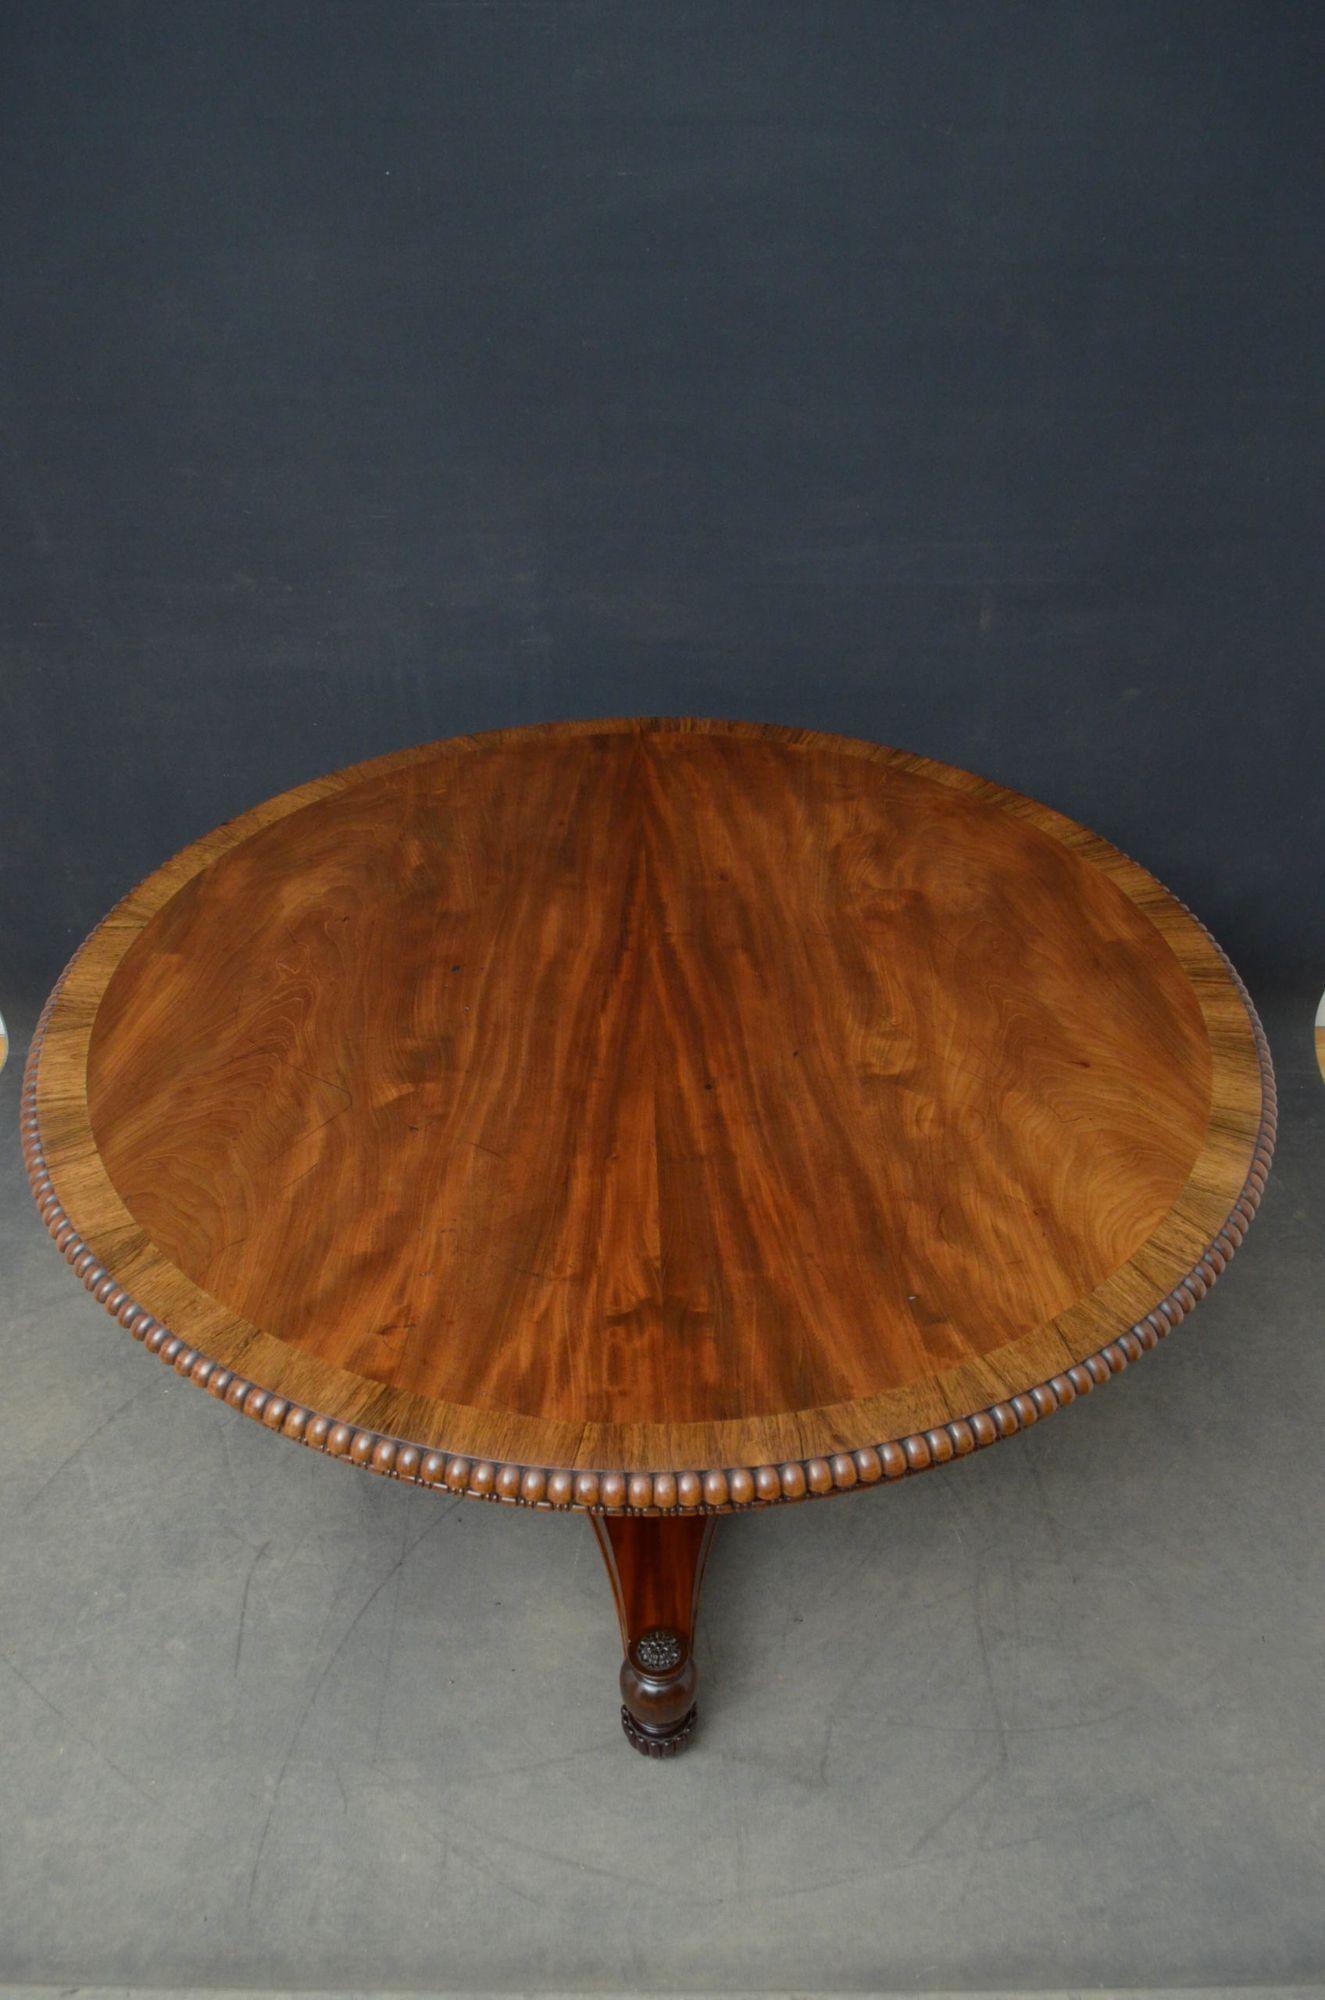 J01 Superbe table centrale en acajou de style Regency, avec un plateau en acajou figuré avec des bandes en bois de rose et des bordures en godrons, reposant sur des colonnes tournées, annelées et cannelées et une base en trèfle se terminant par des